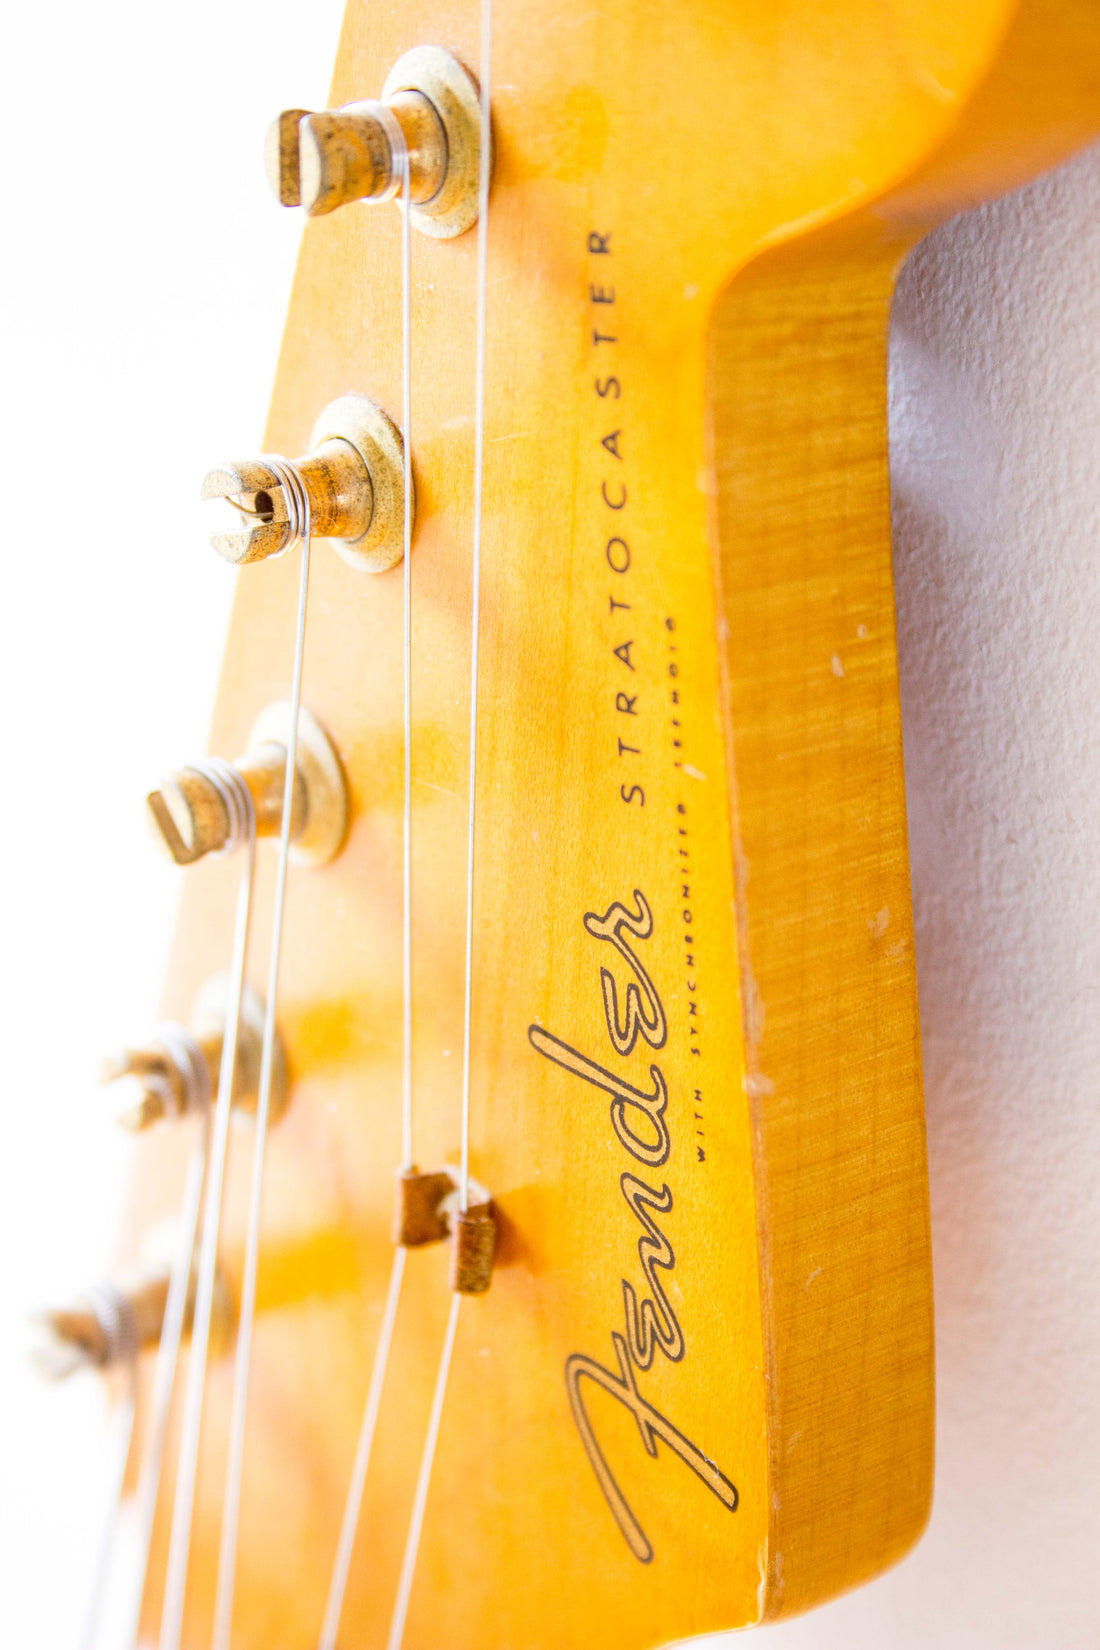 Fender Japan '57 Reissue Stratocaster ST57G-65 Transparent Green 1993/4